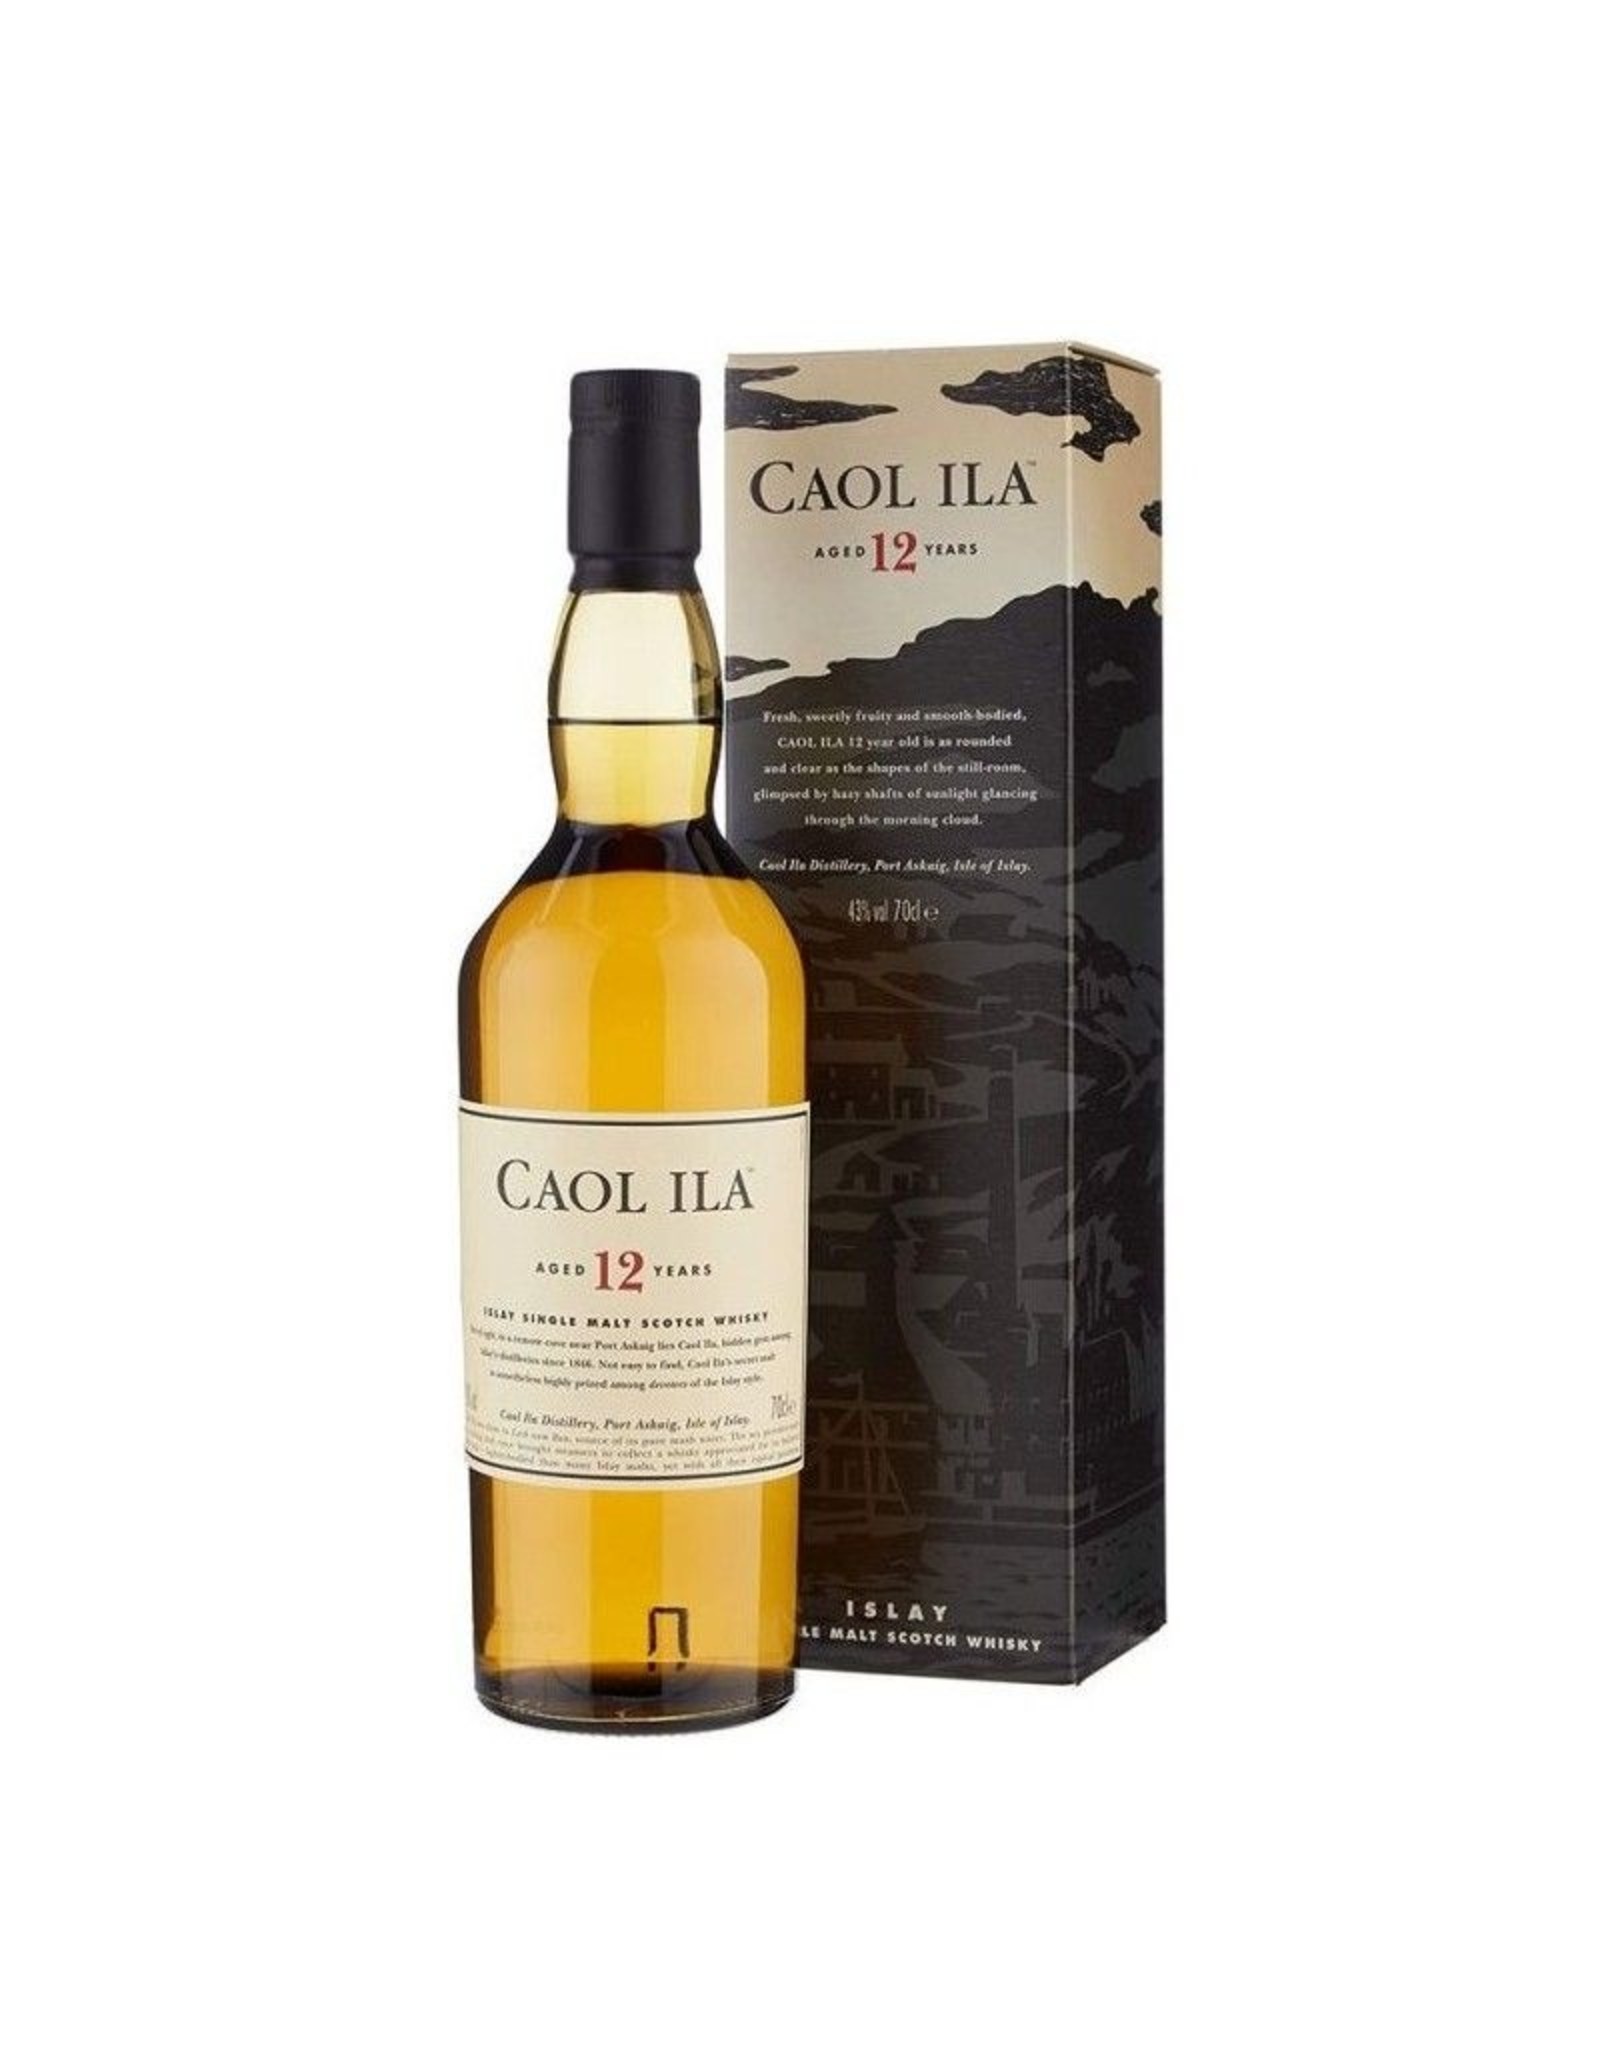 Caol Ila 12 years 70cl. 43%, Islay Single Malt Whisky